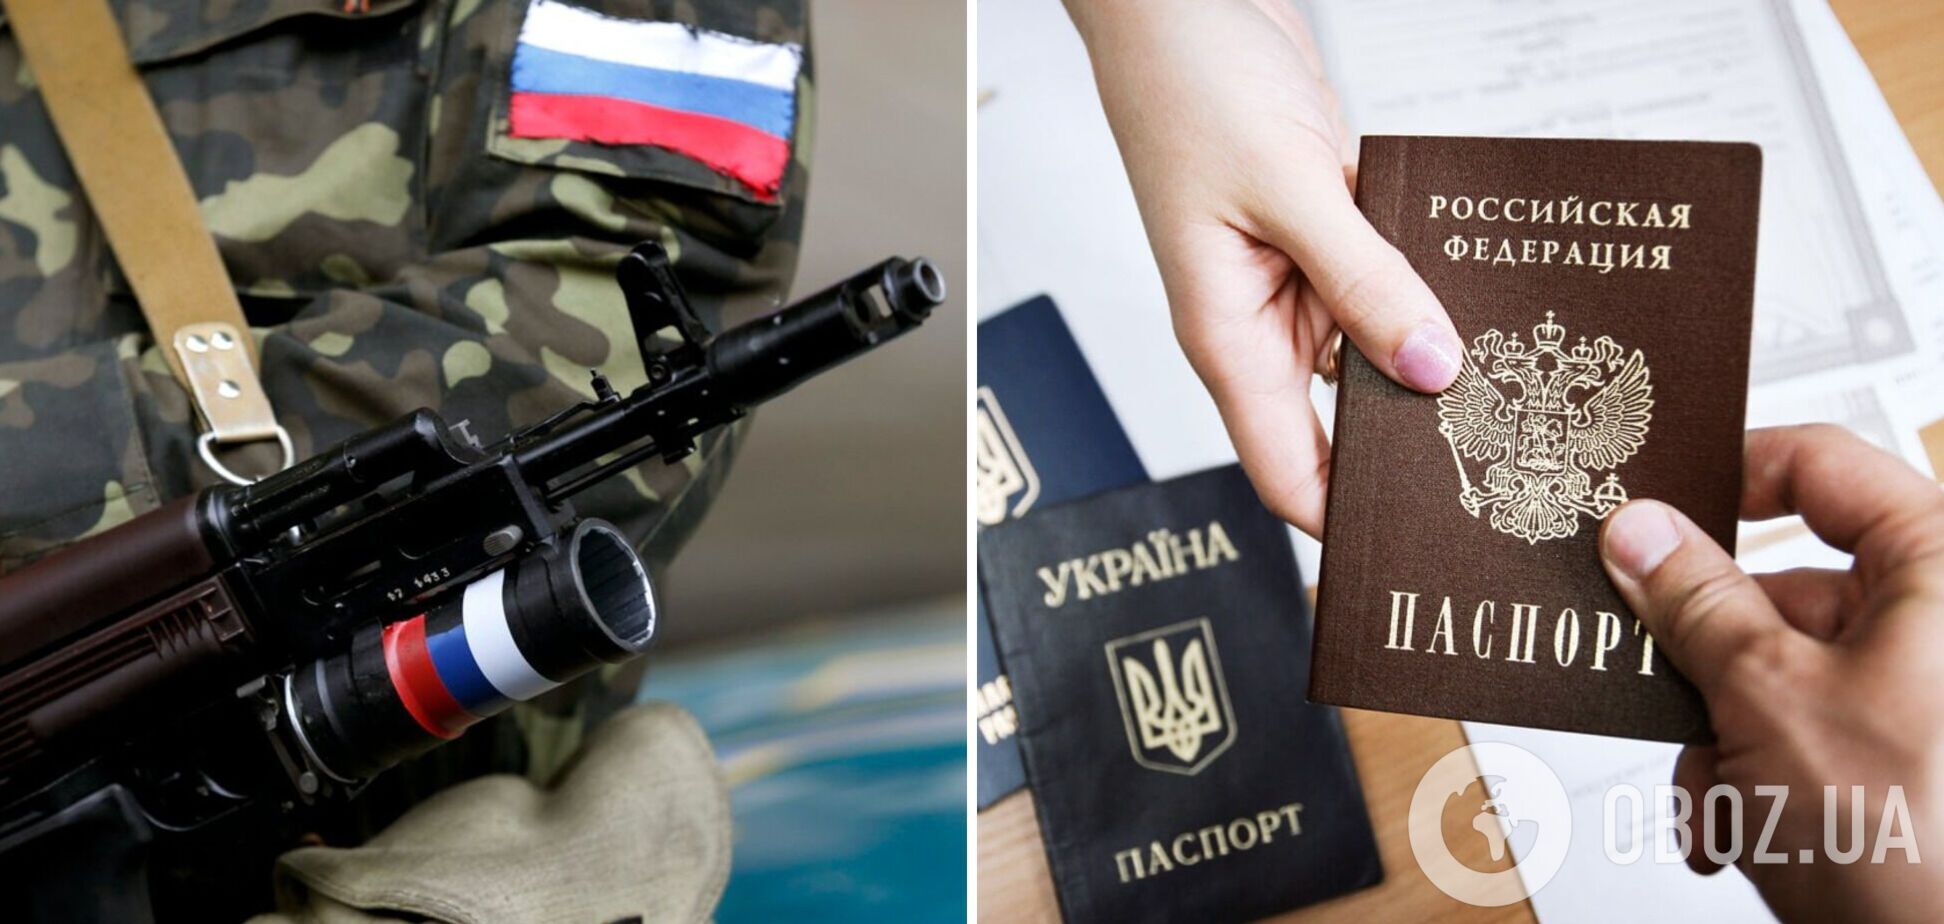 Оккупанты принудительно паспортизируют украинцев